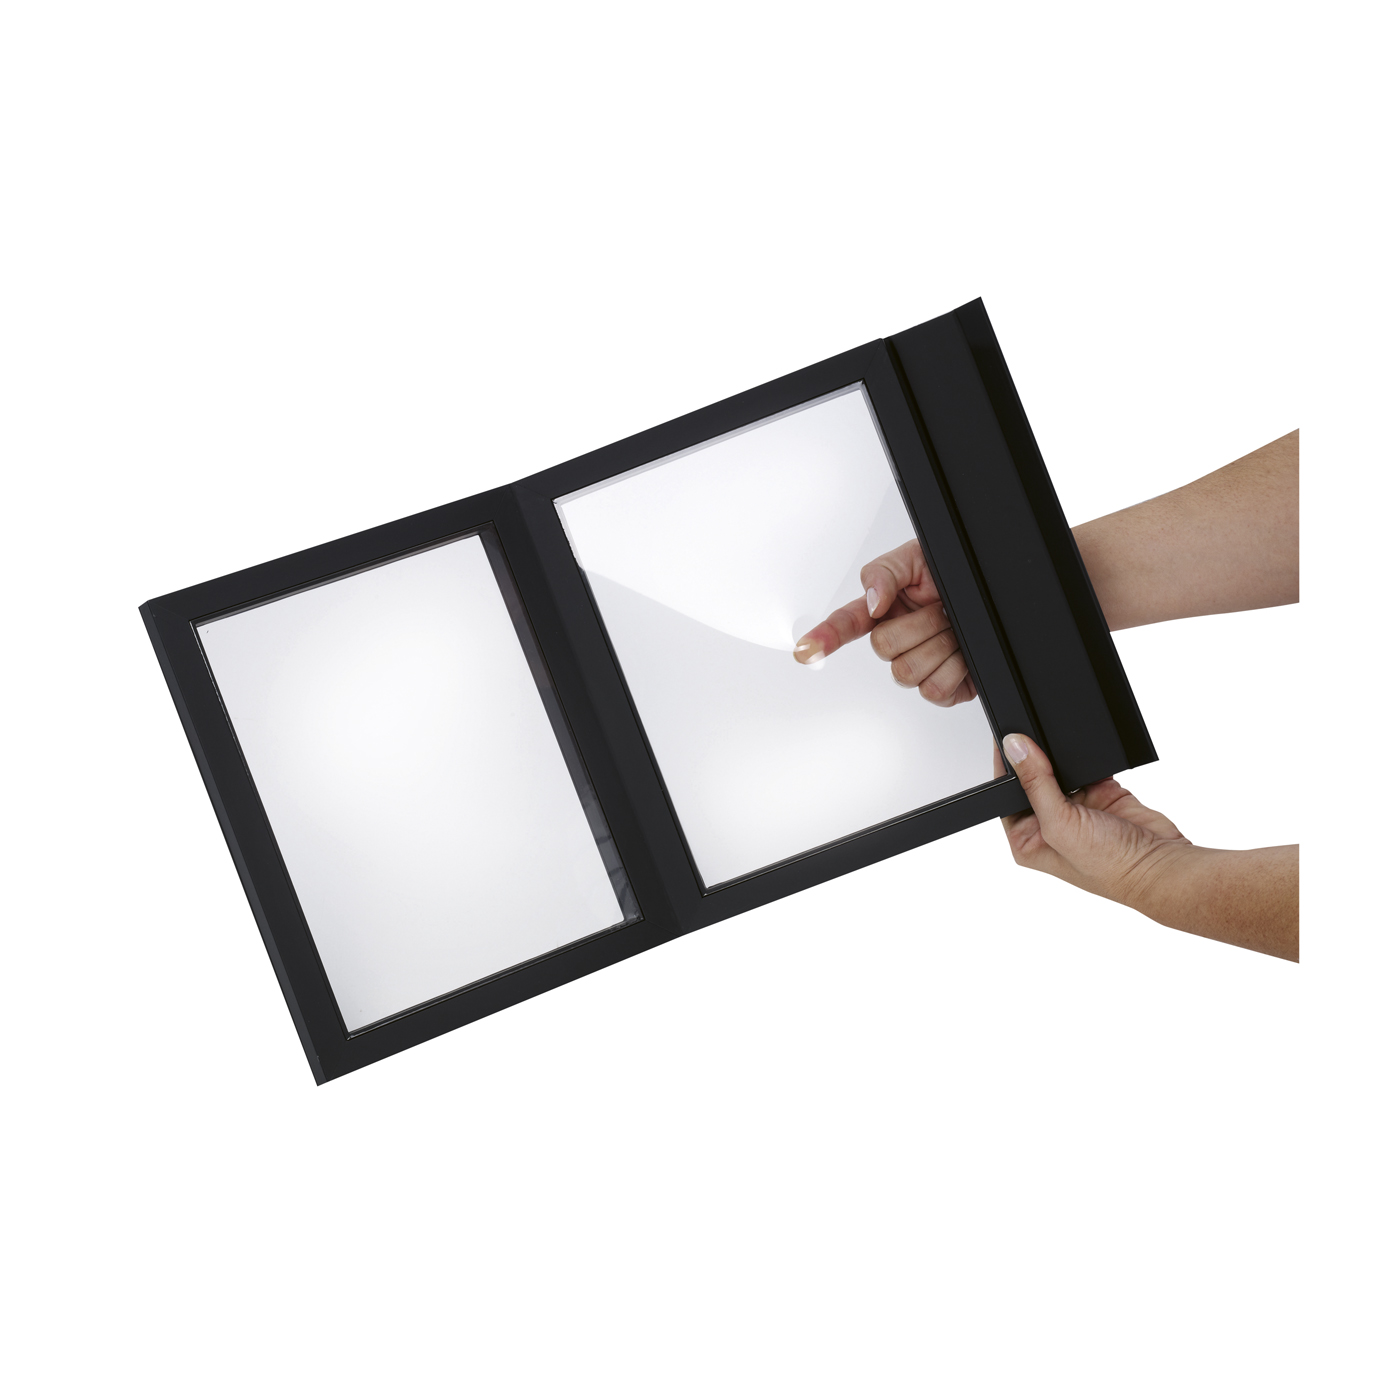 Schmucketui "Frame", schwarz, 70 x 70 x 25 mm - 1 Stück